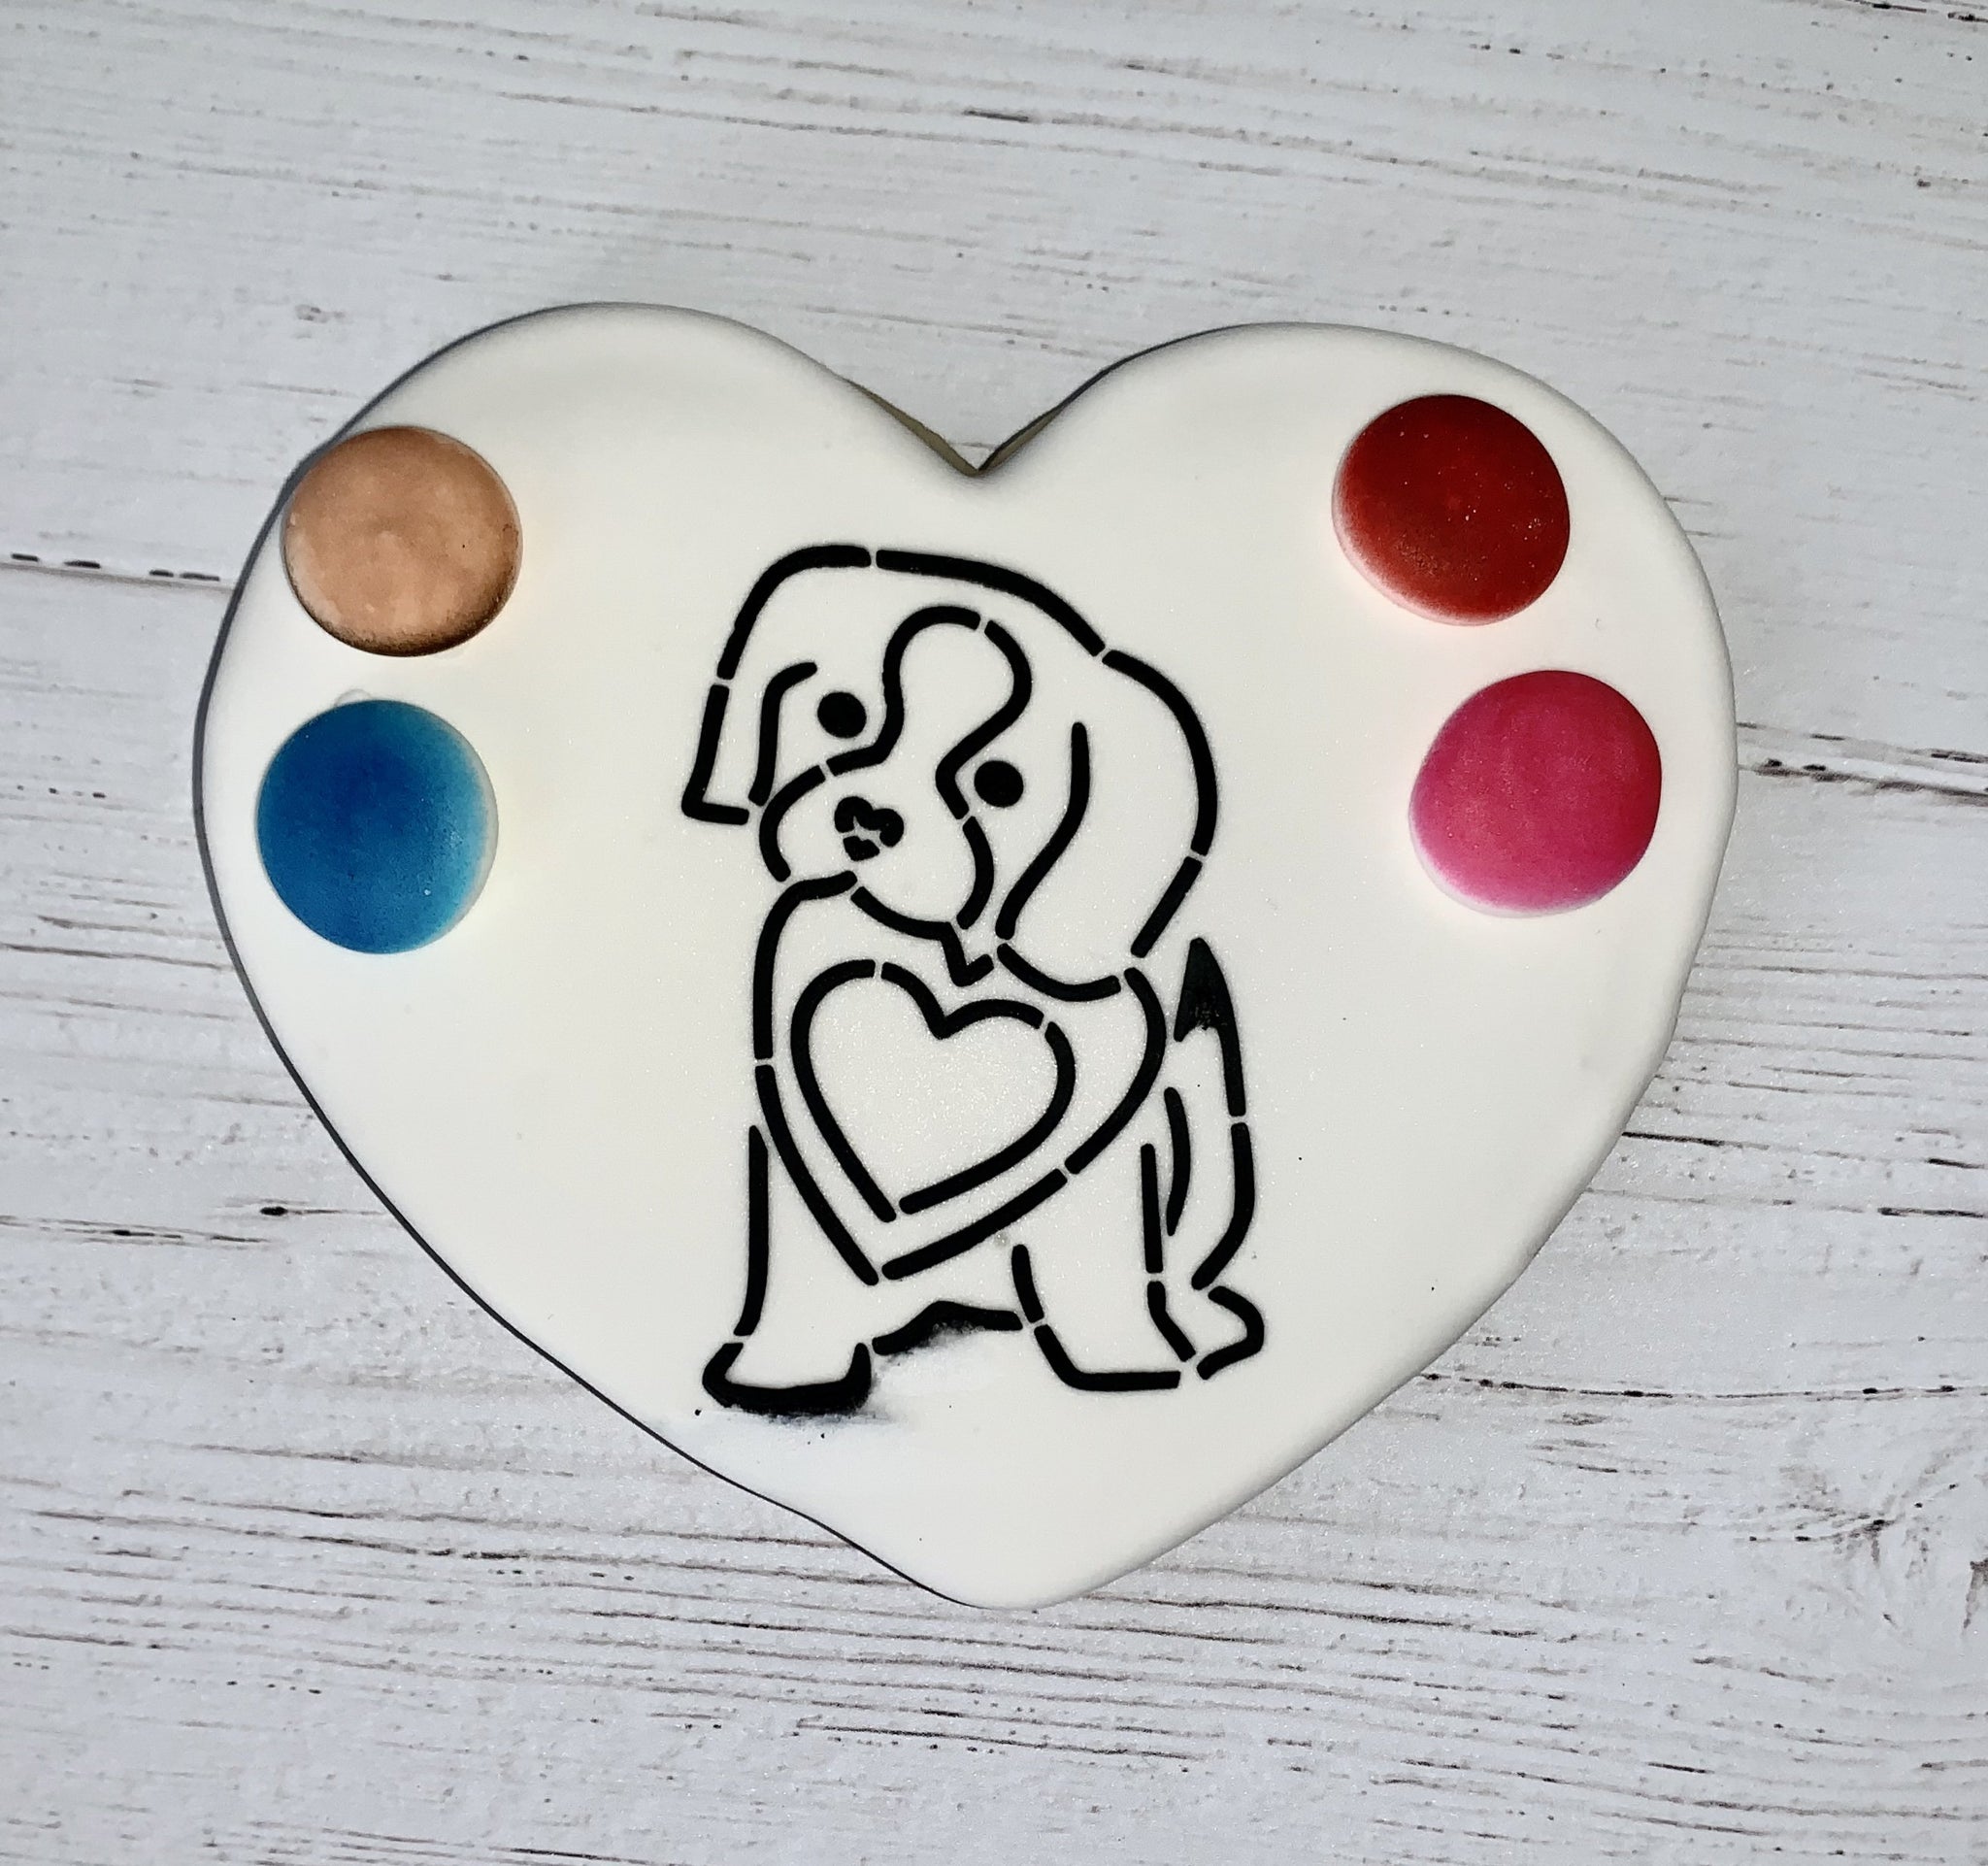 Swirl Valentine Heart Round Cookie Stencil Set by Designer Stencils